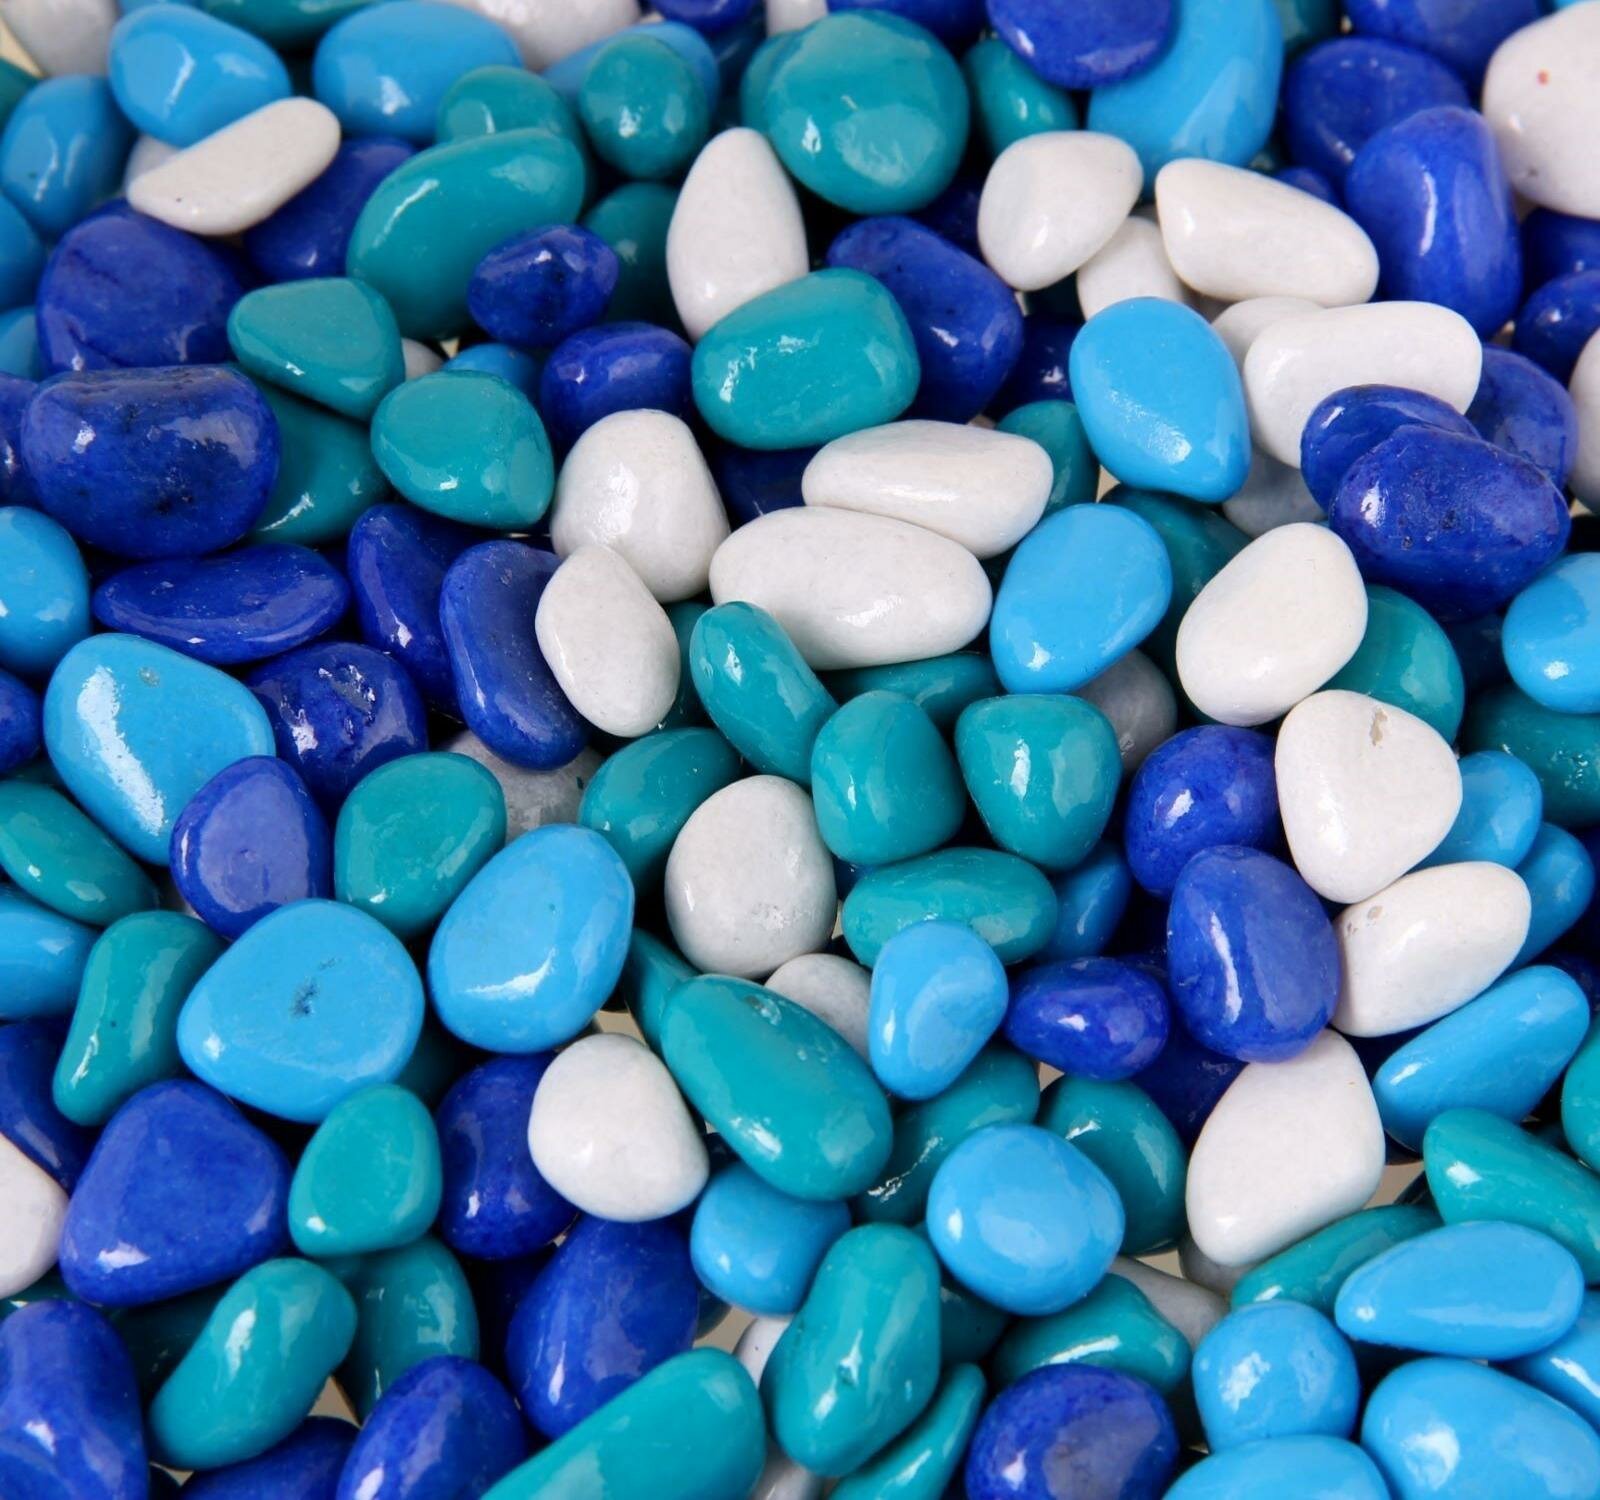 Грунт для аквариума "Галька цветная, голубой-синий-белый-бирюзовый" 800г фр 8-12 мм